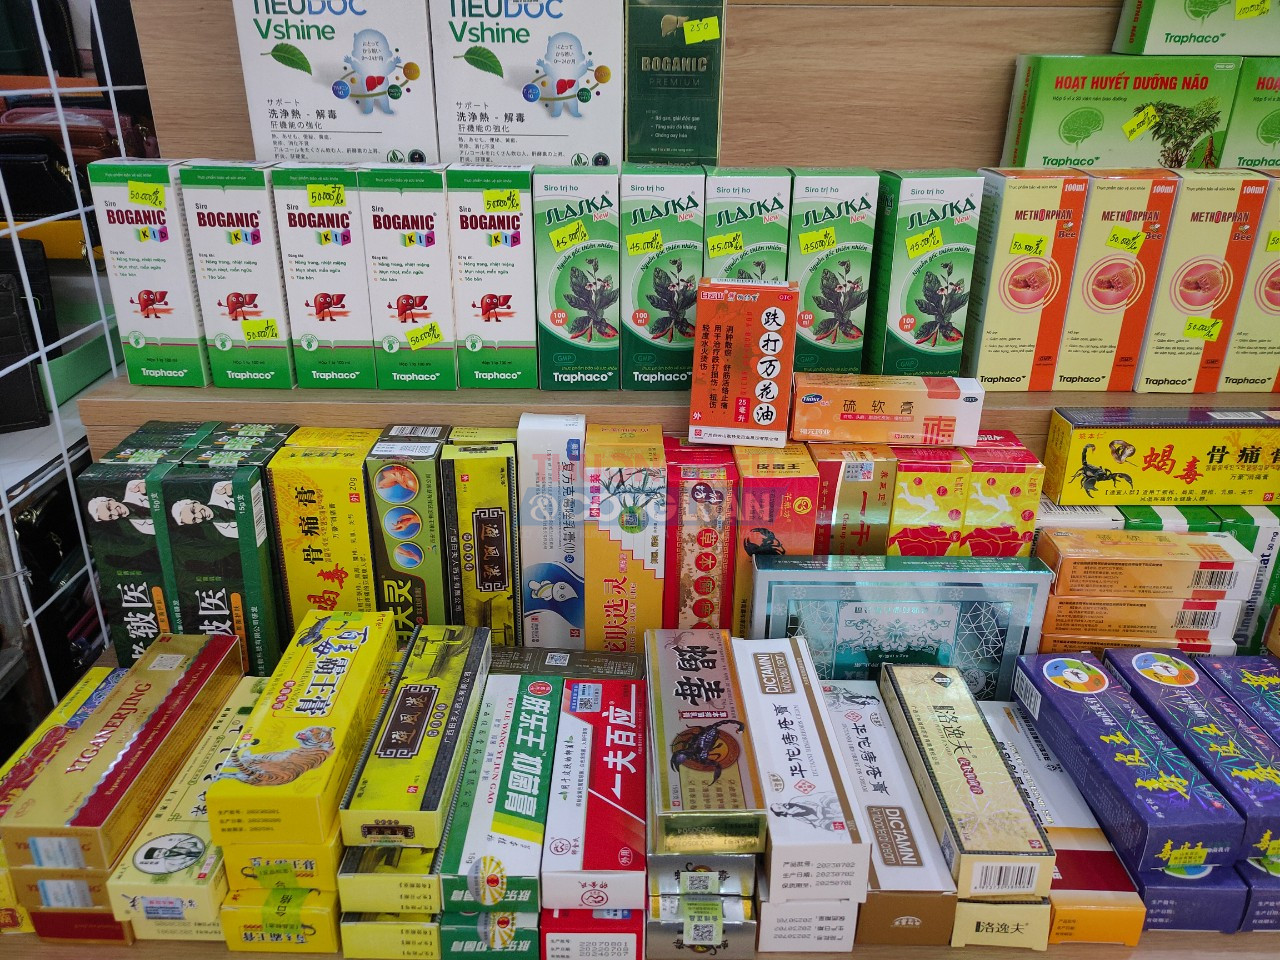 Các loại thuốc nước ngoài được bày bán cùng với thuốc Việt Nam.